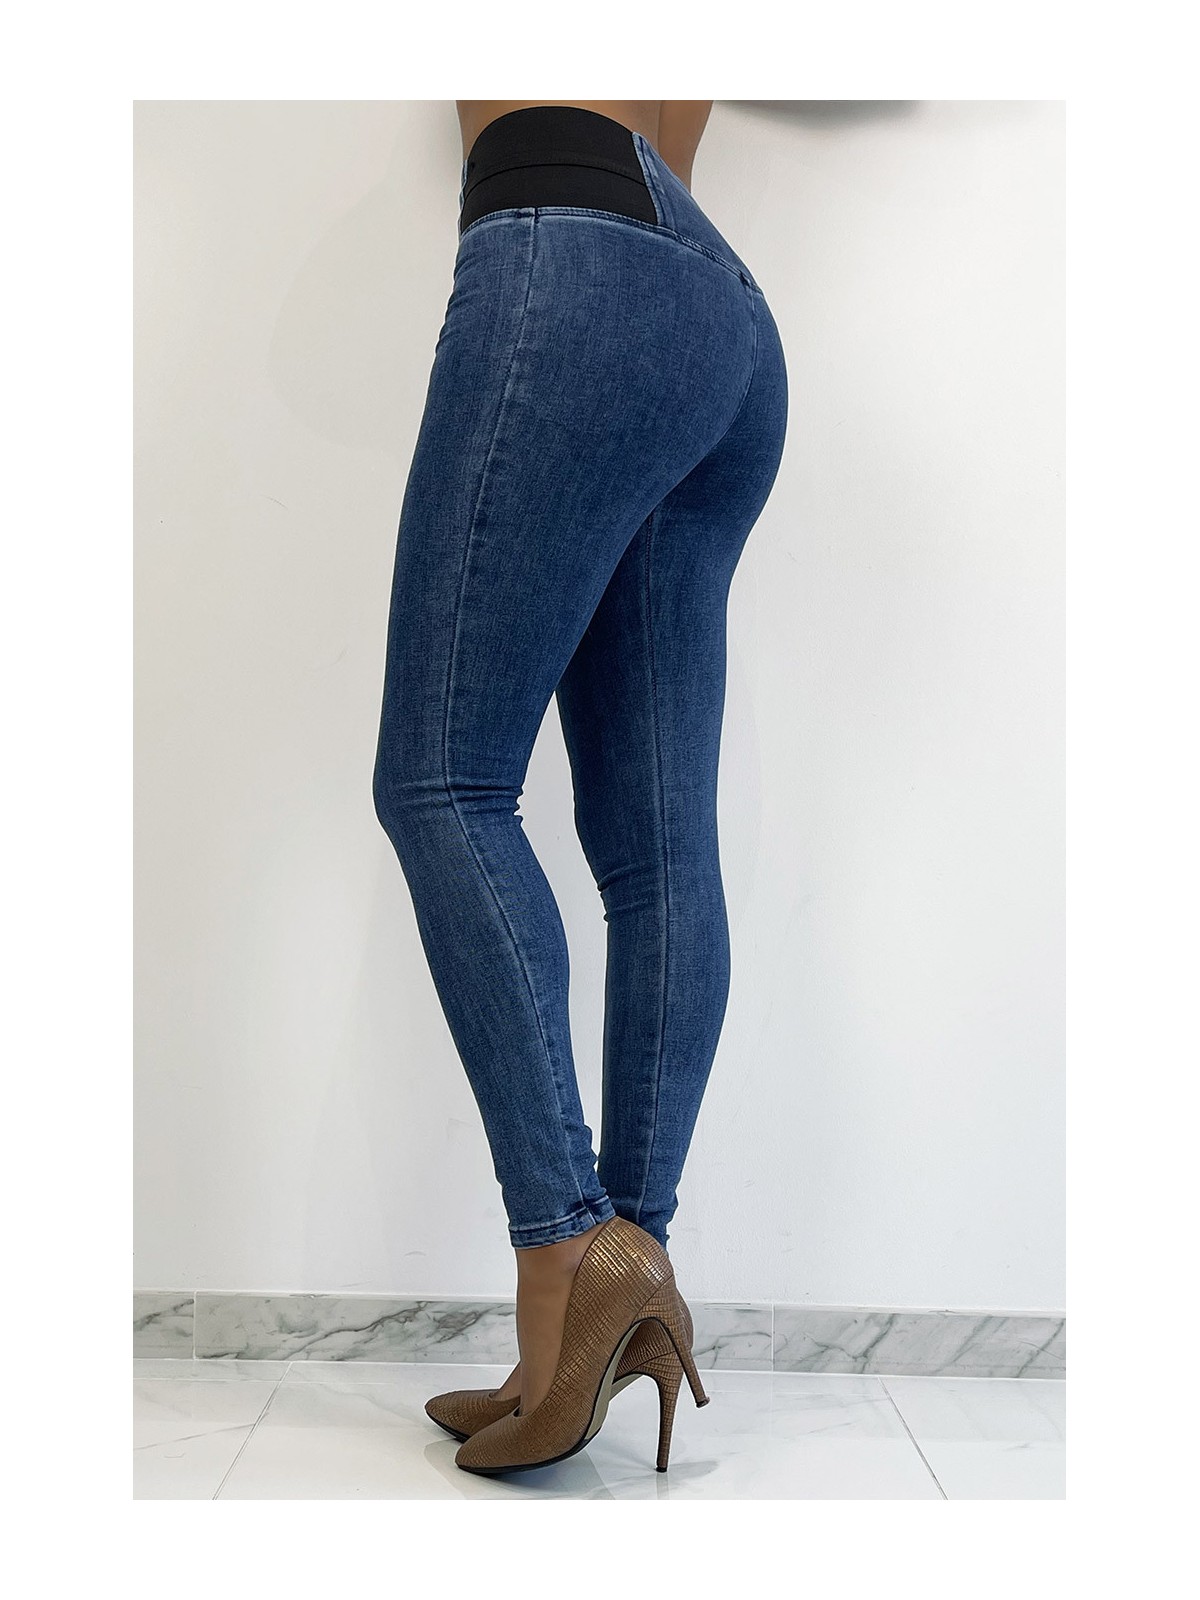 Pantalon jeans bleu taille haute avec élastique à la taille - 3